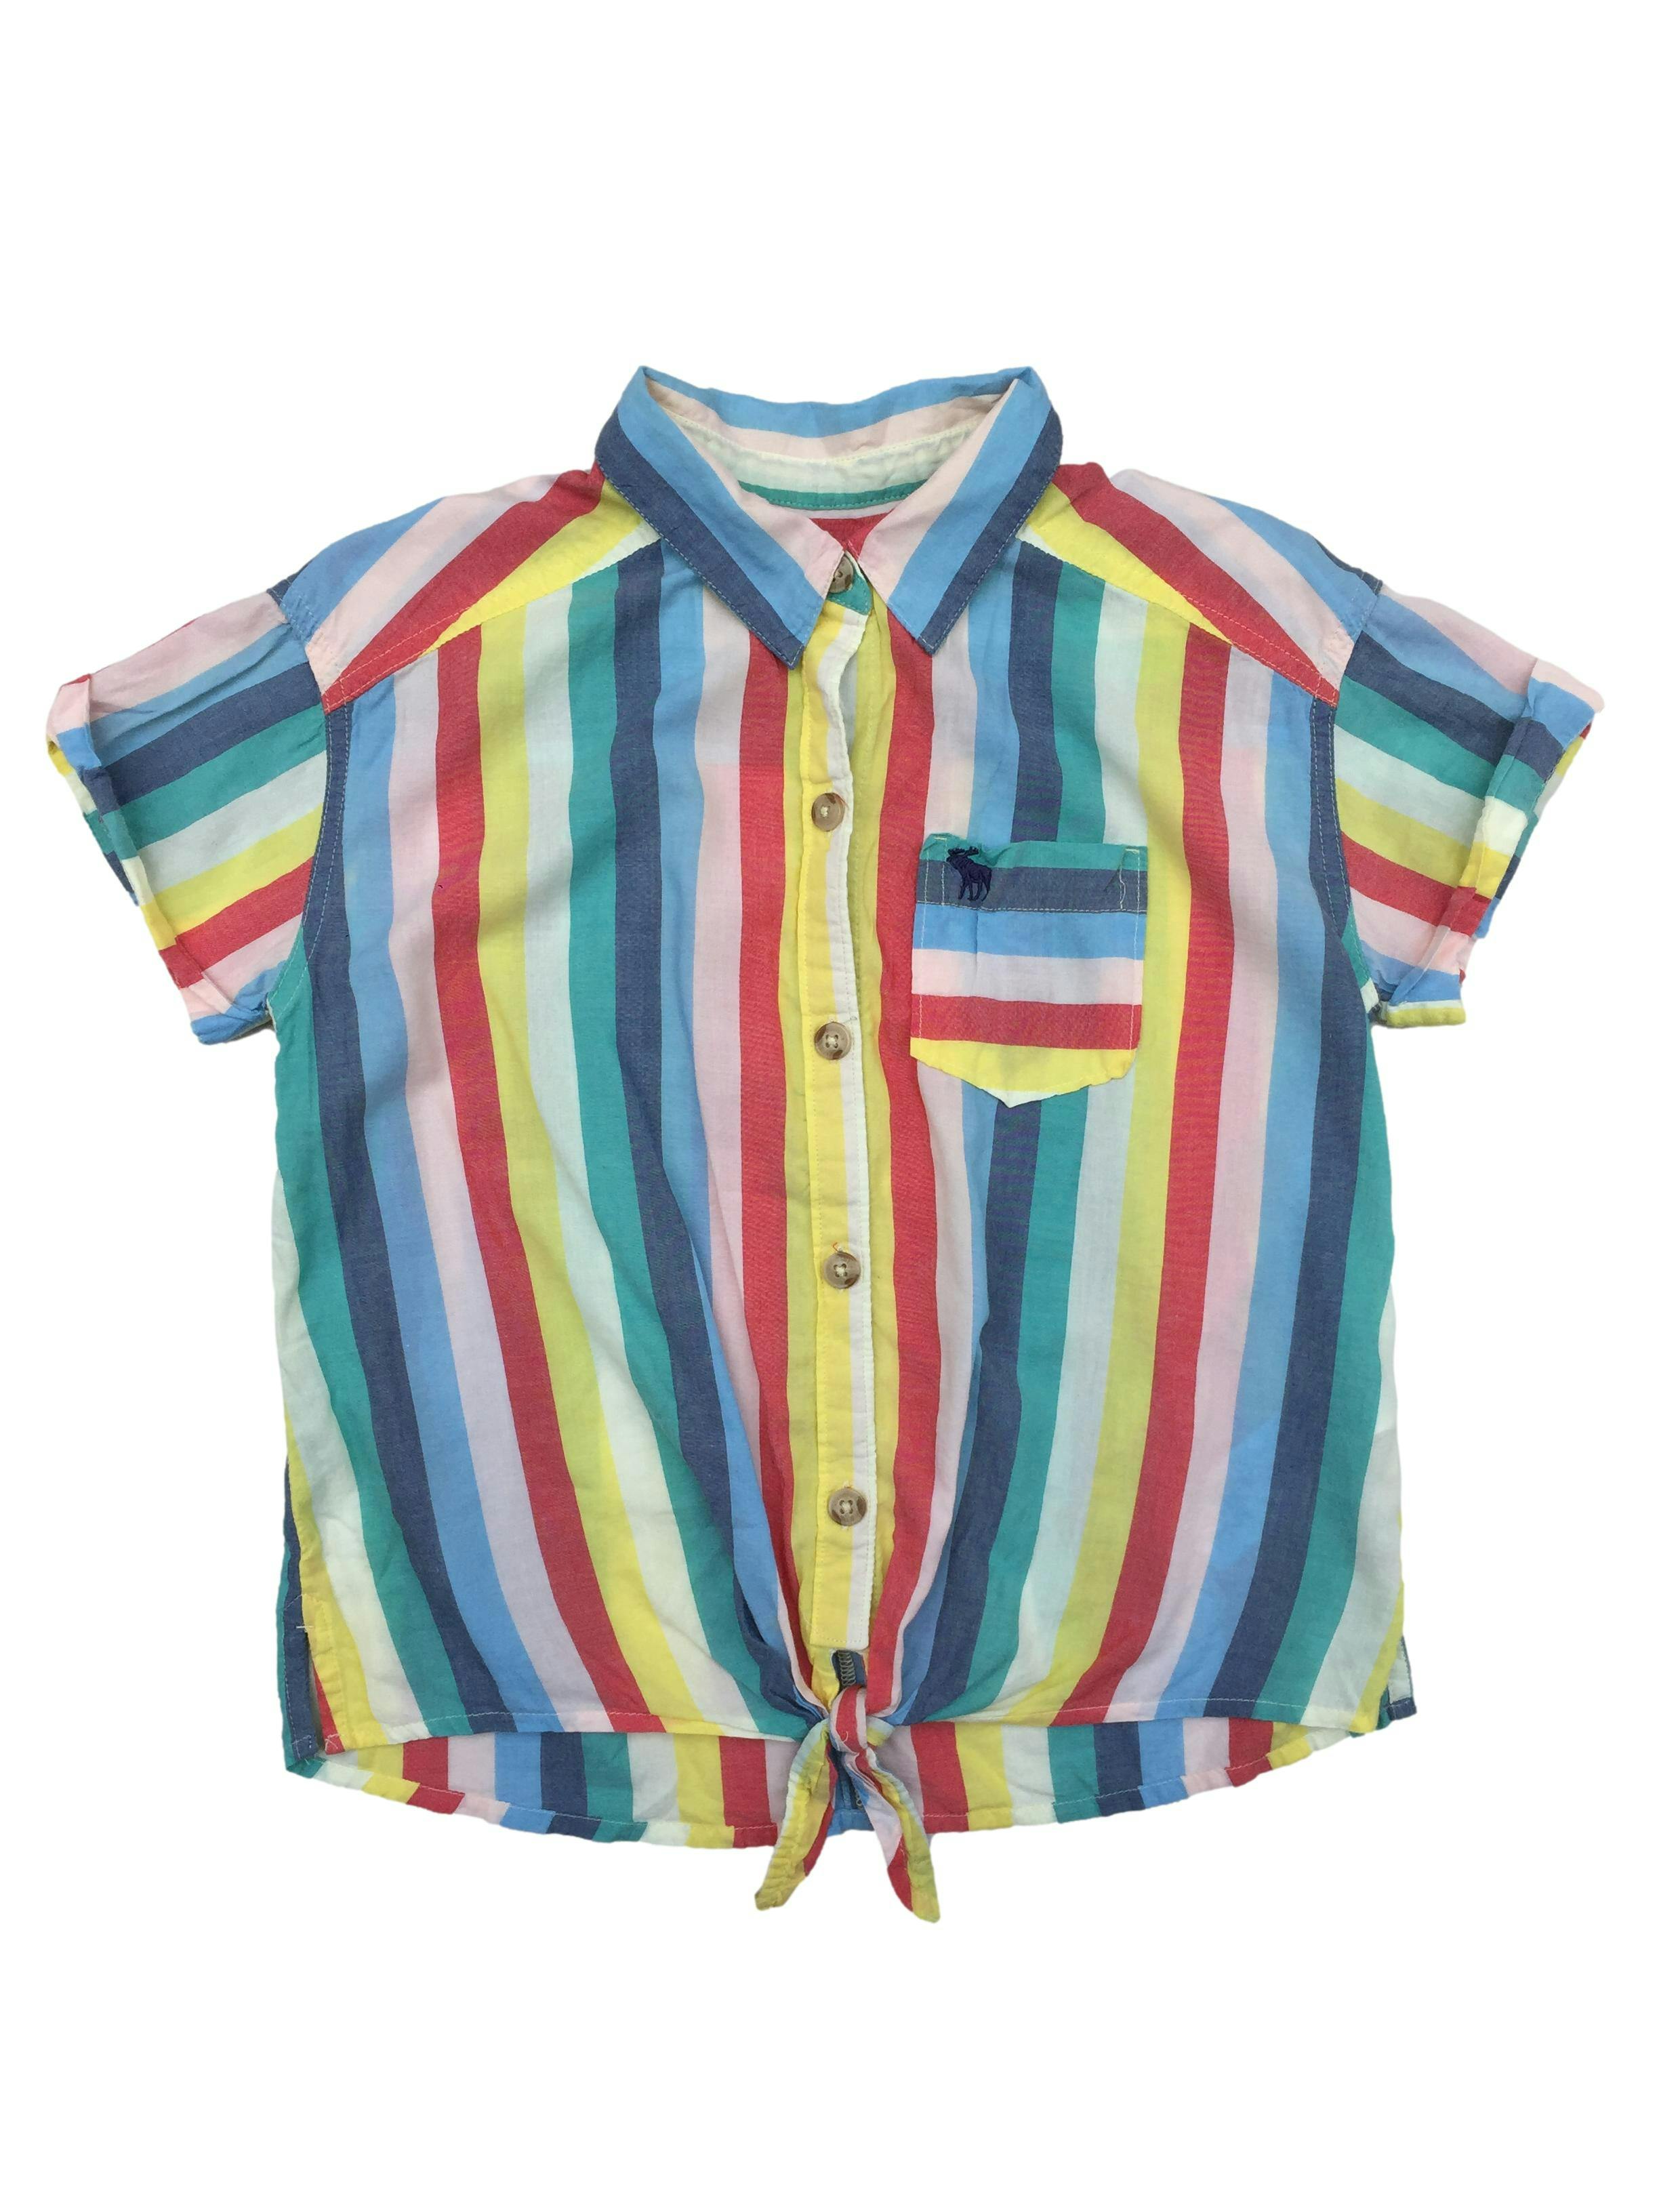 Blusa Abercrombie en franjas de colores, botones delantero y nudo en basta.